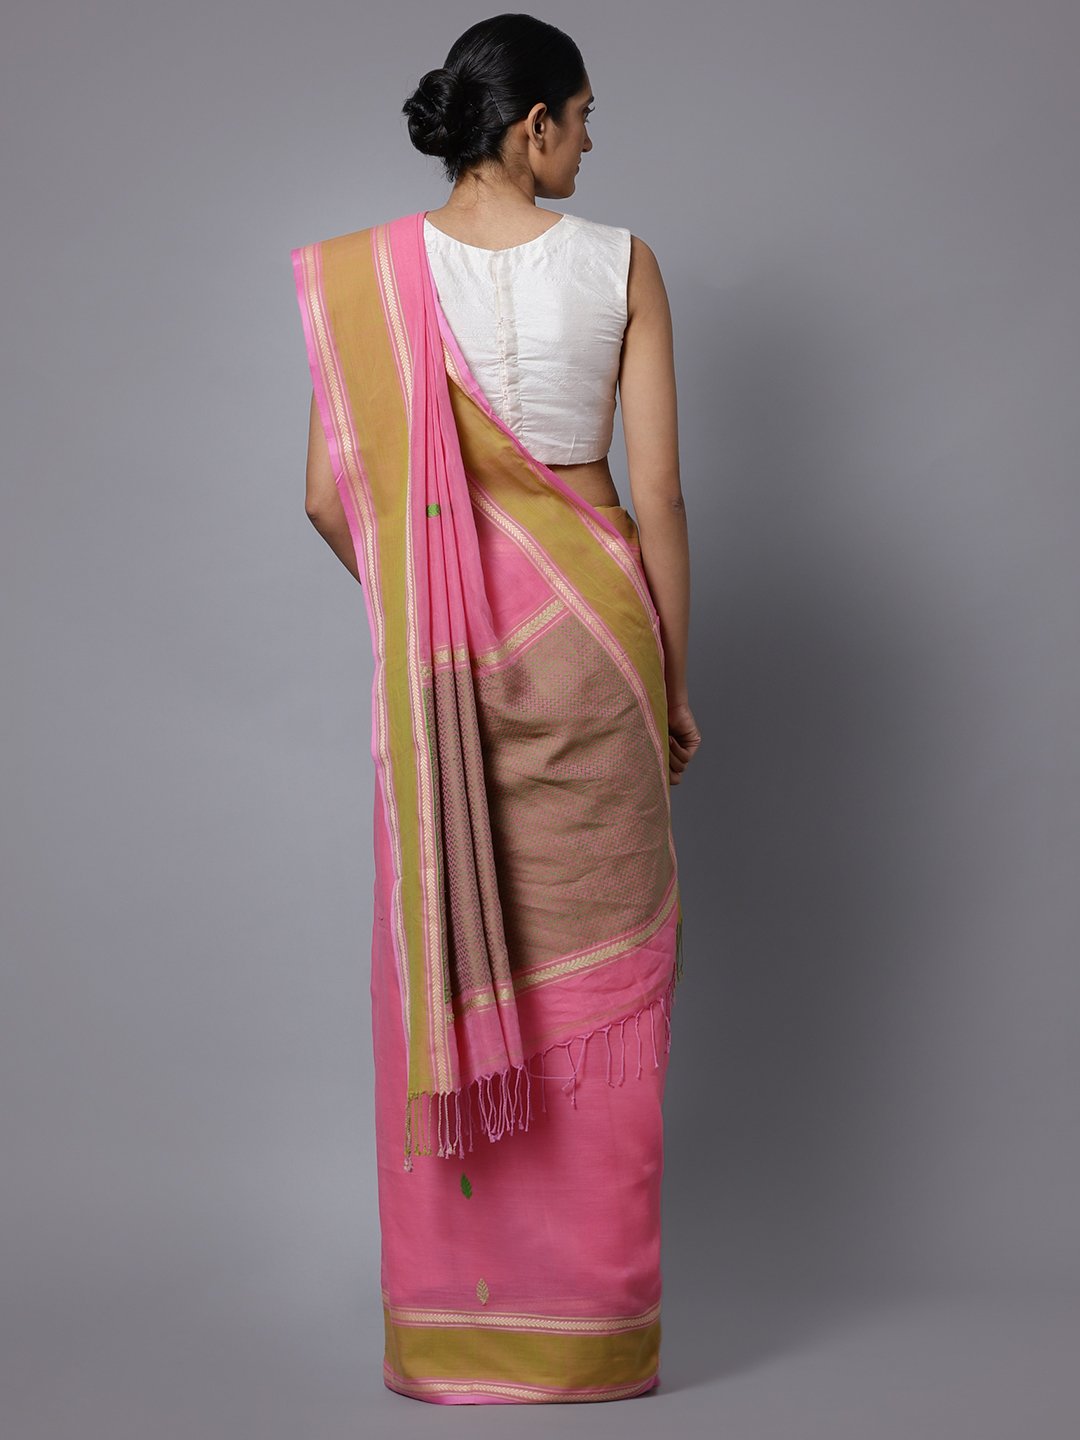 Pink bengal handloom cotton saree